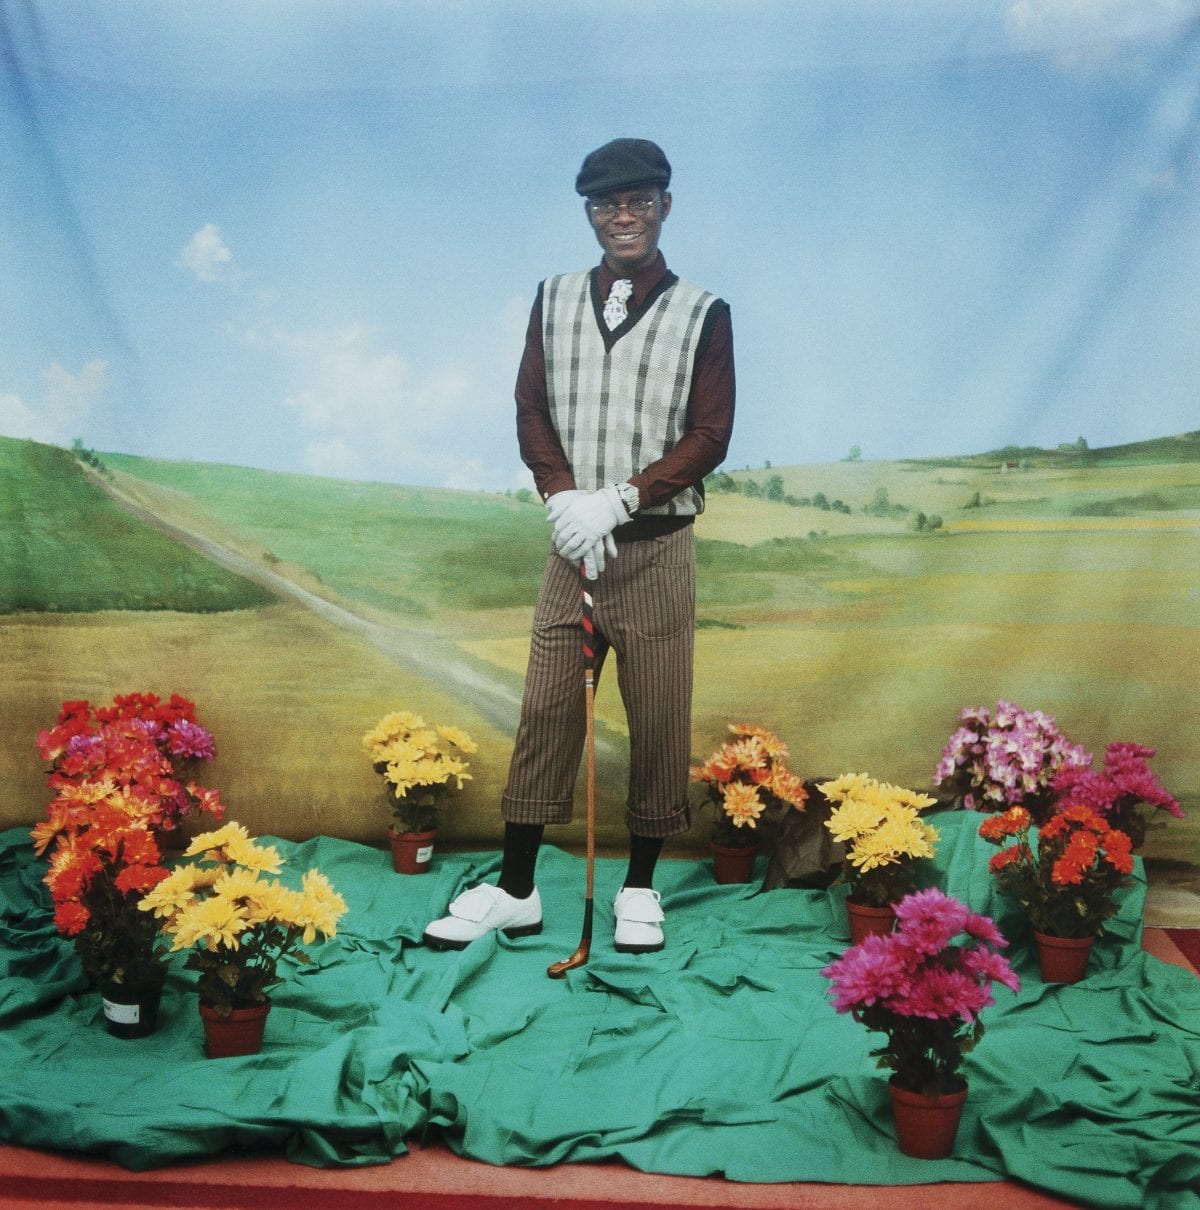 Le Golfeur Autoportrait Série TATI Photographie couleur 1997 120 x 120 cm